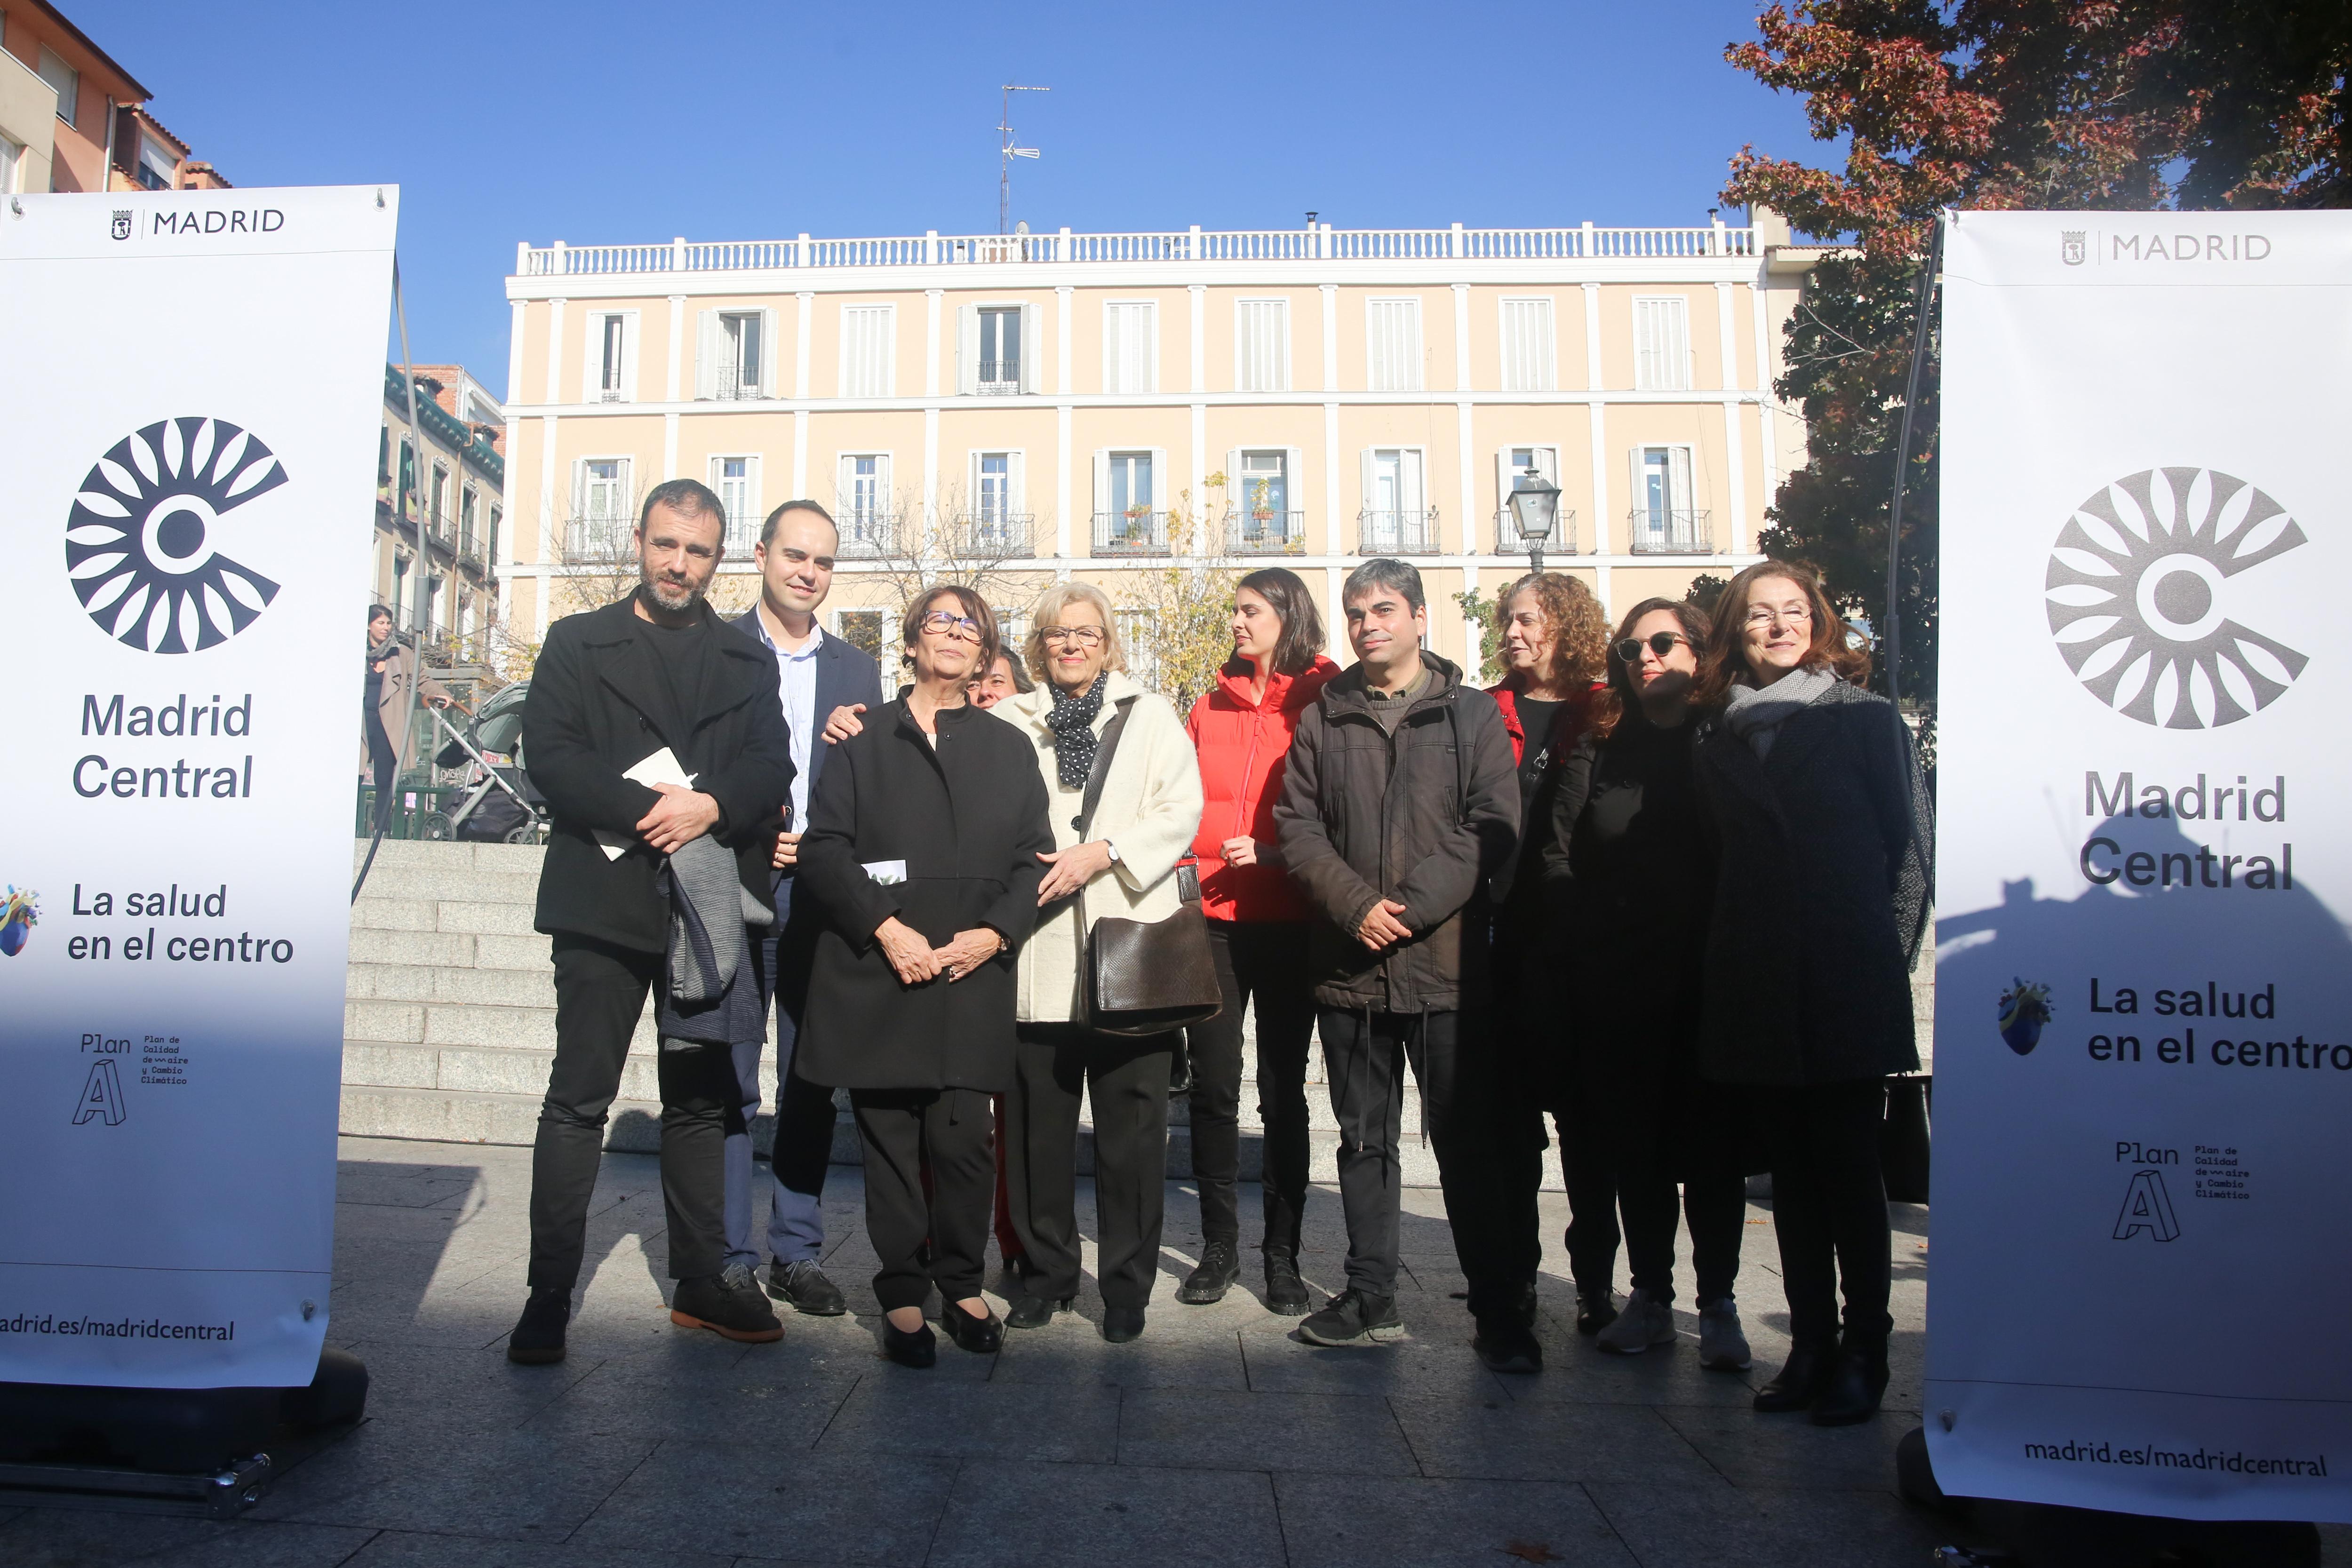 La alcaldesa de Madrid Manuela Carmena posa junto a otros miembros del Ayuntamiento en la presentación de Madrid Central - Ricardo Rubio Europa Press